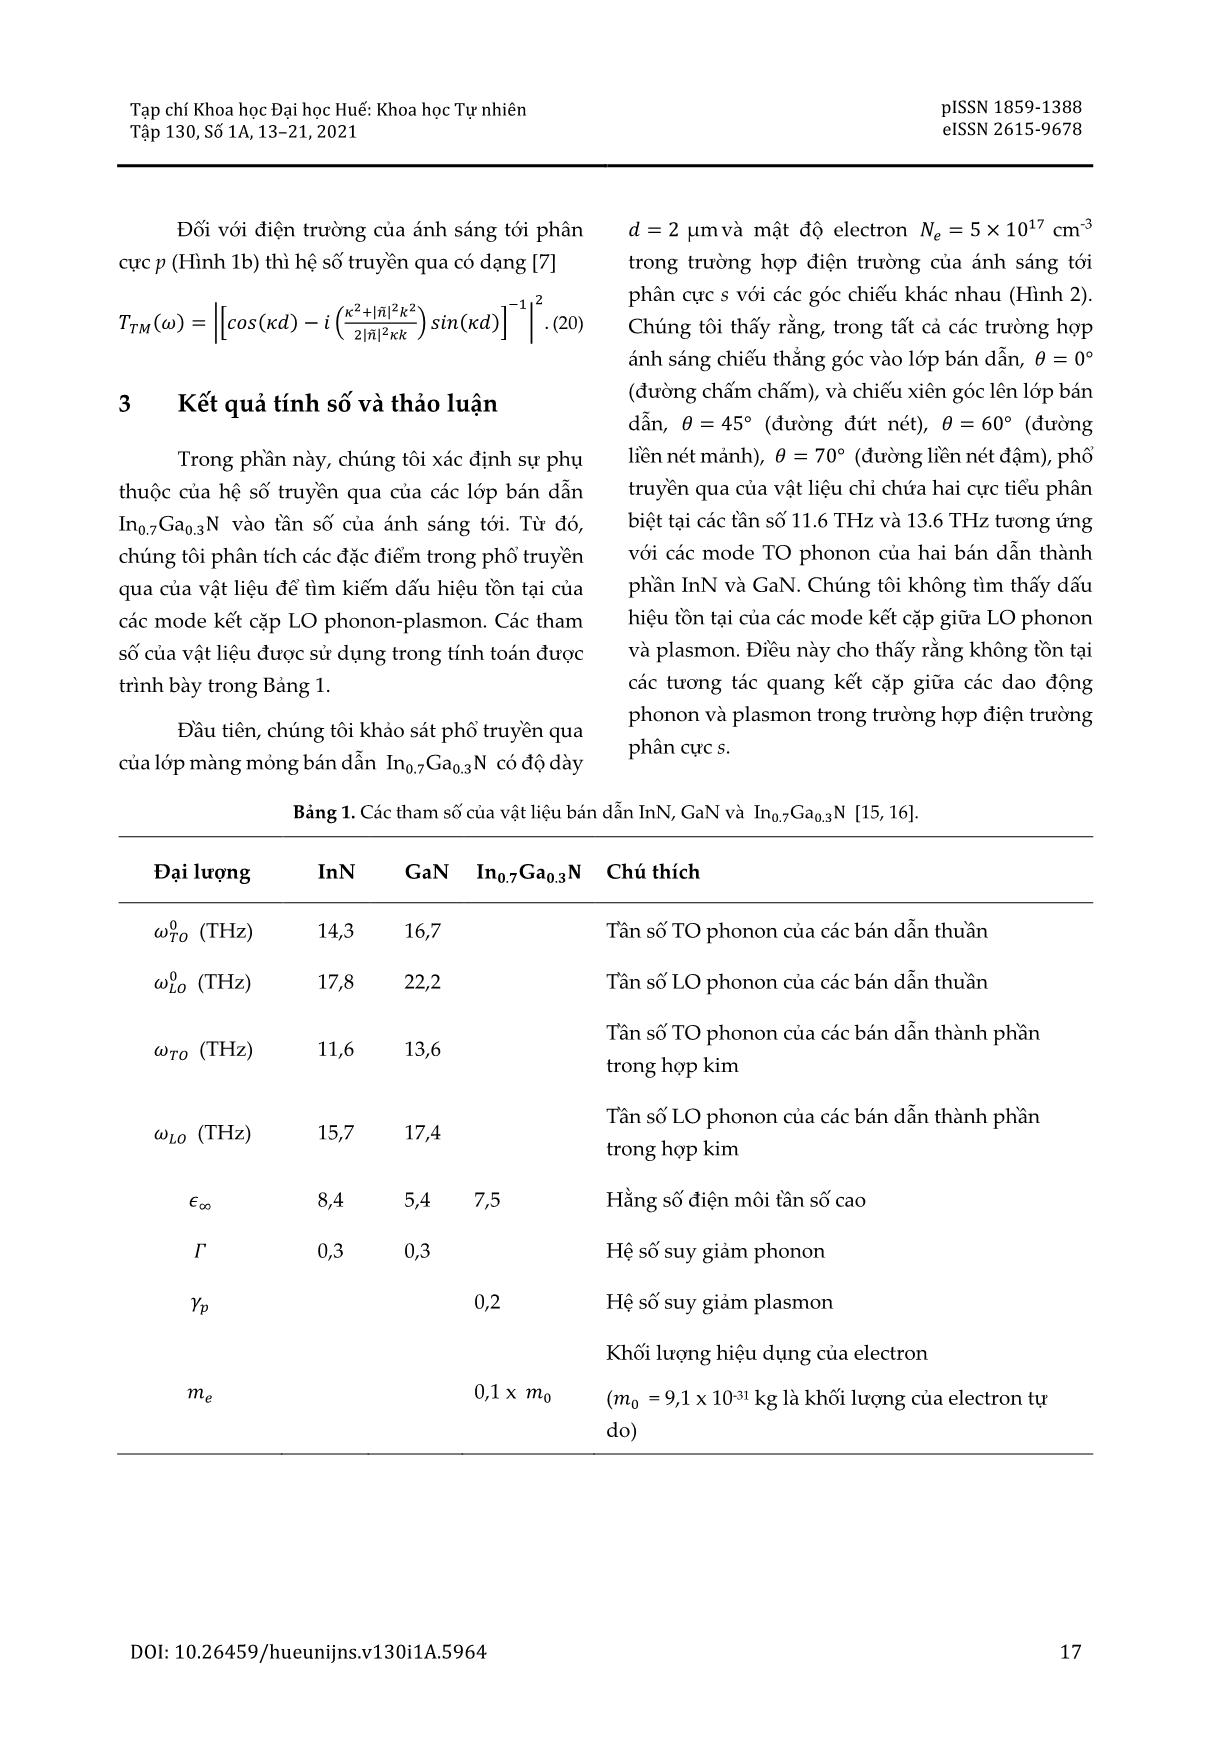 Sự kết cặp của phonon quang dọc - plasmon trong các lớp bán dẫn InGaN trang 5